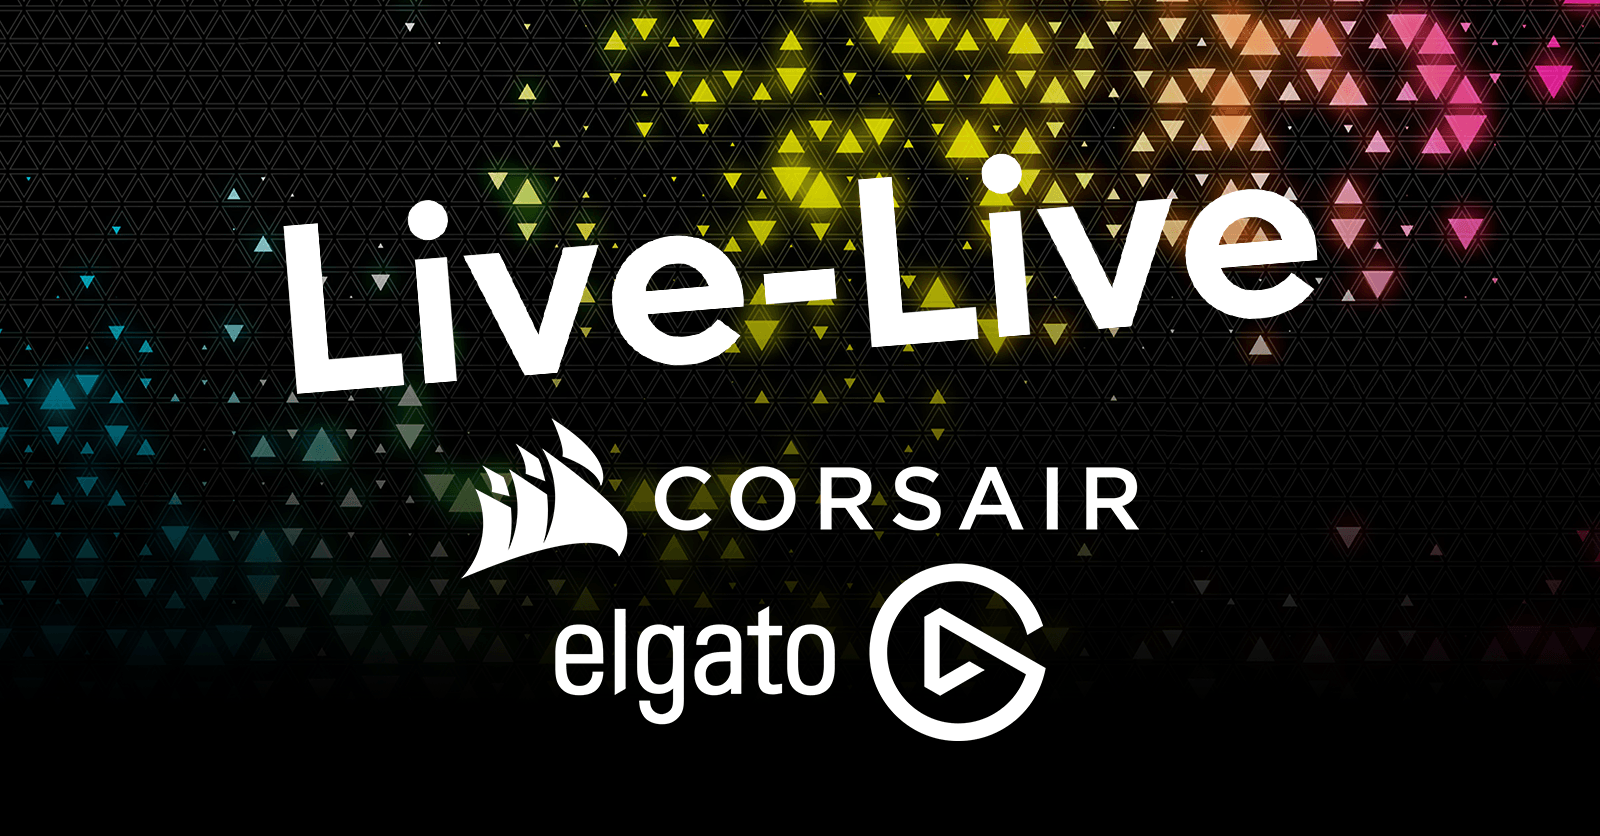 Live-Live: Corsair/Elgato